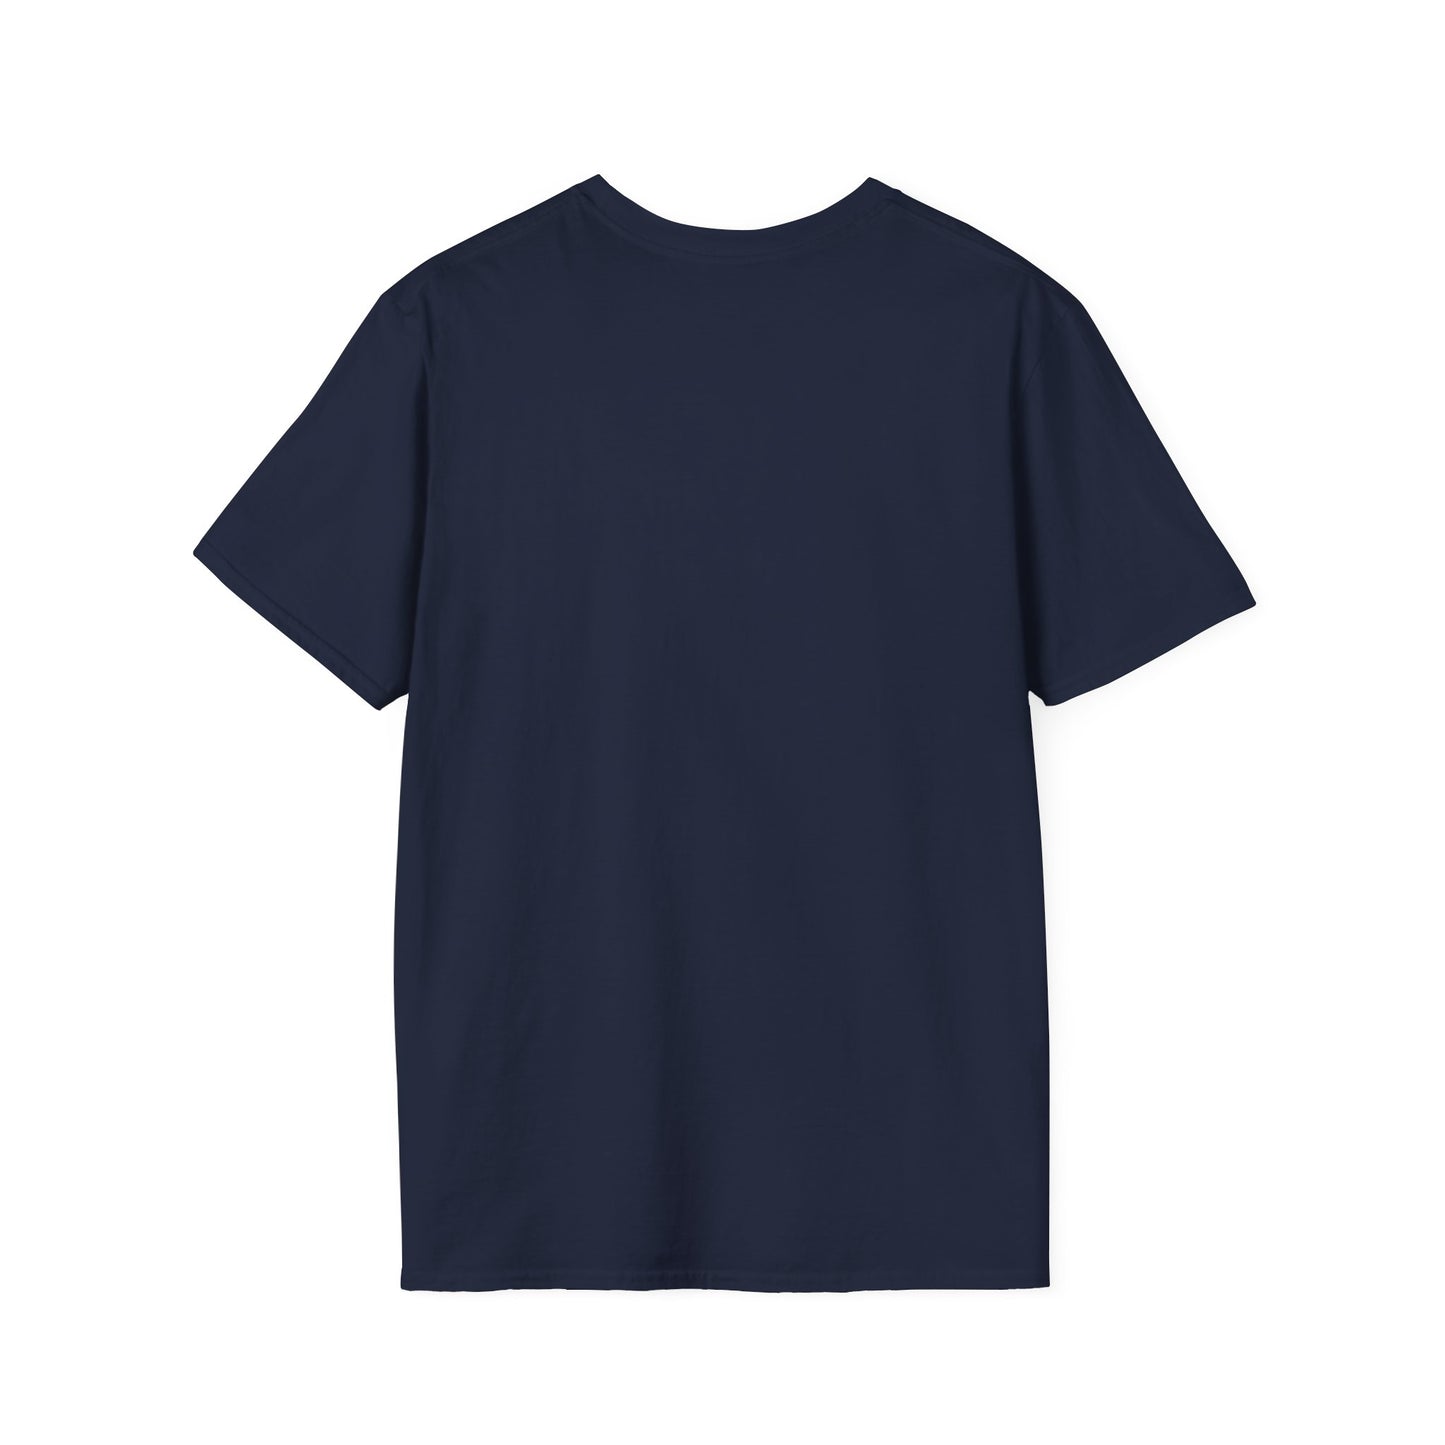 SLN SACRED SEEK Unisex Softstyle T-Shirt